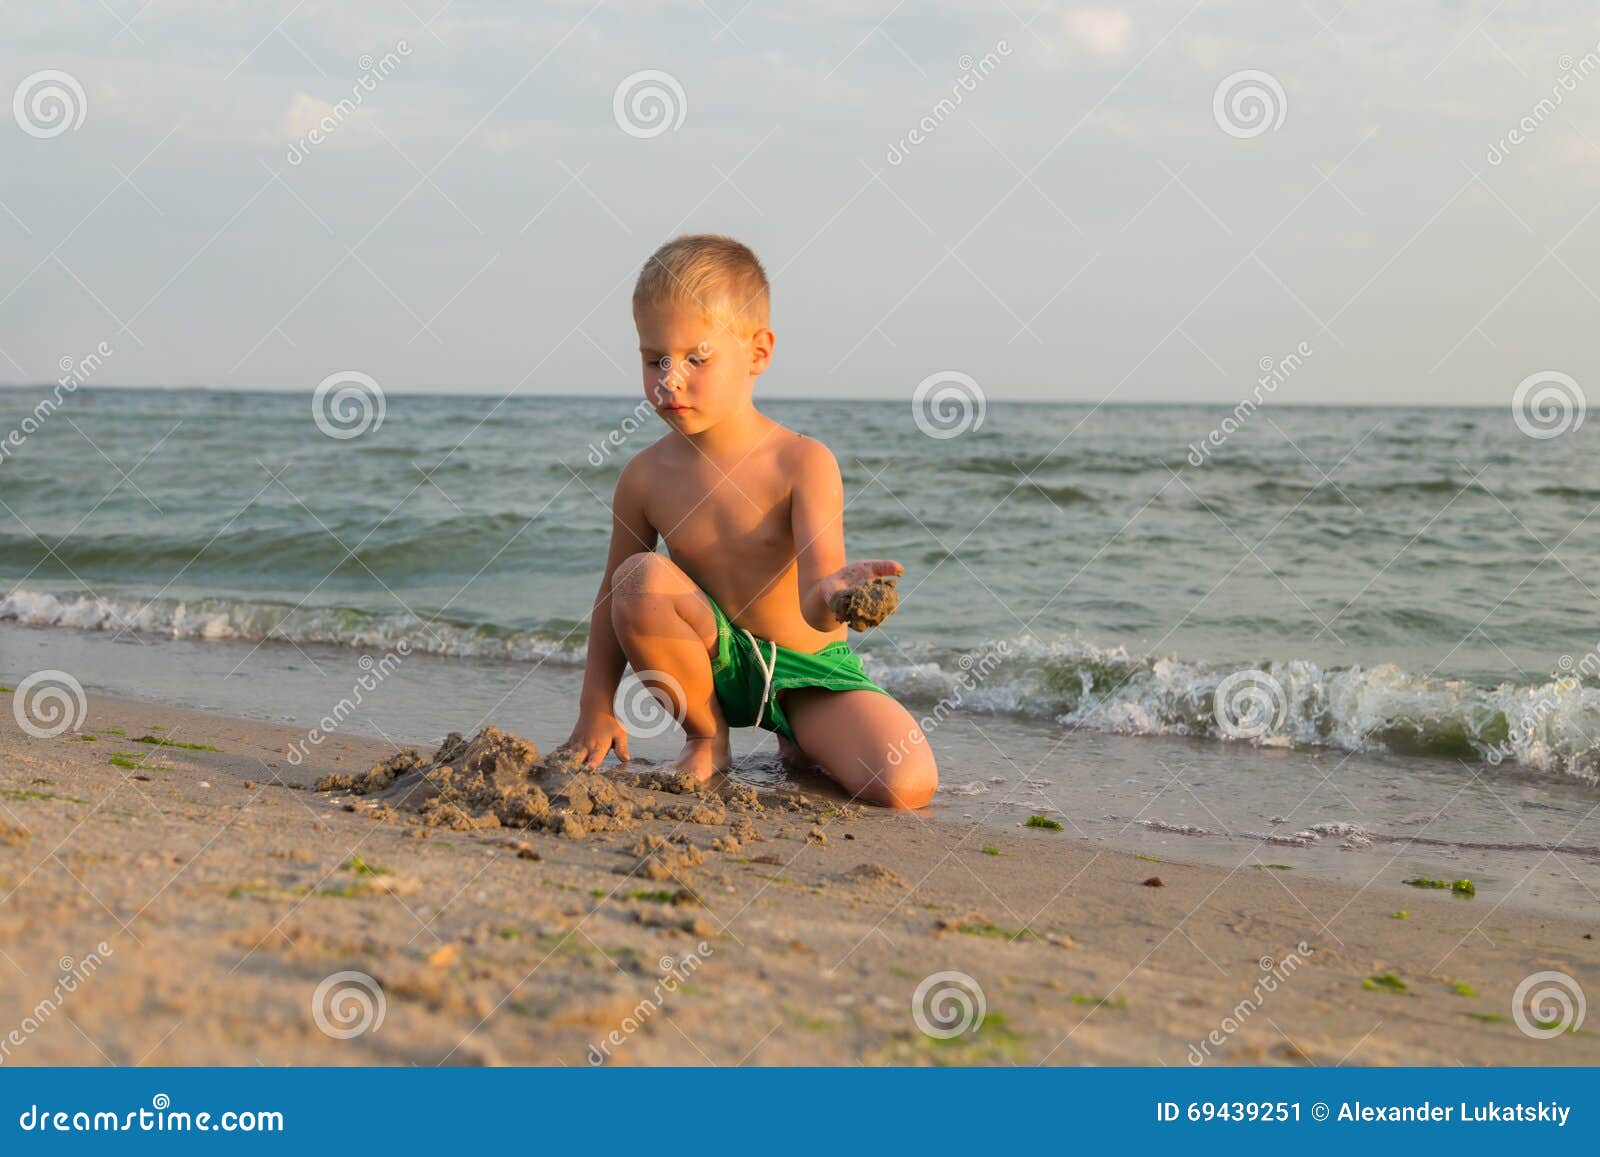 порно маленькие мальчики пляж фото 25